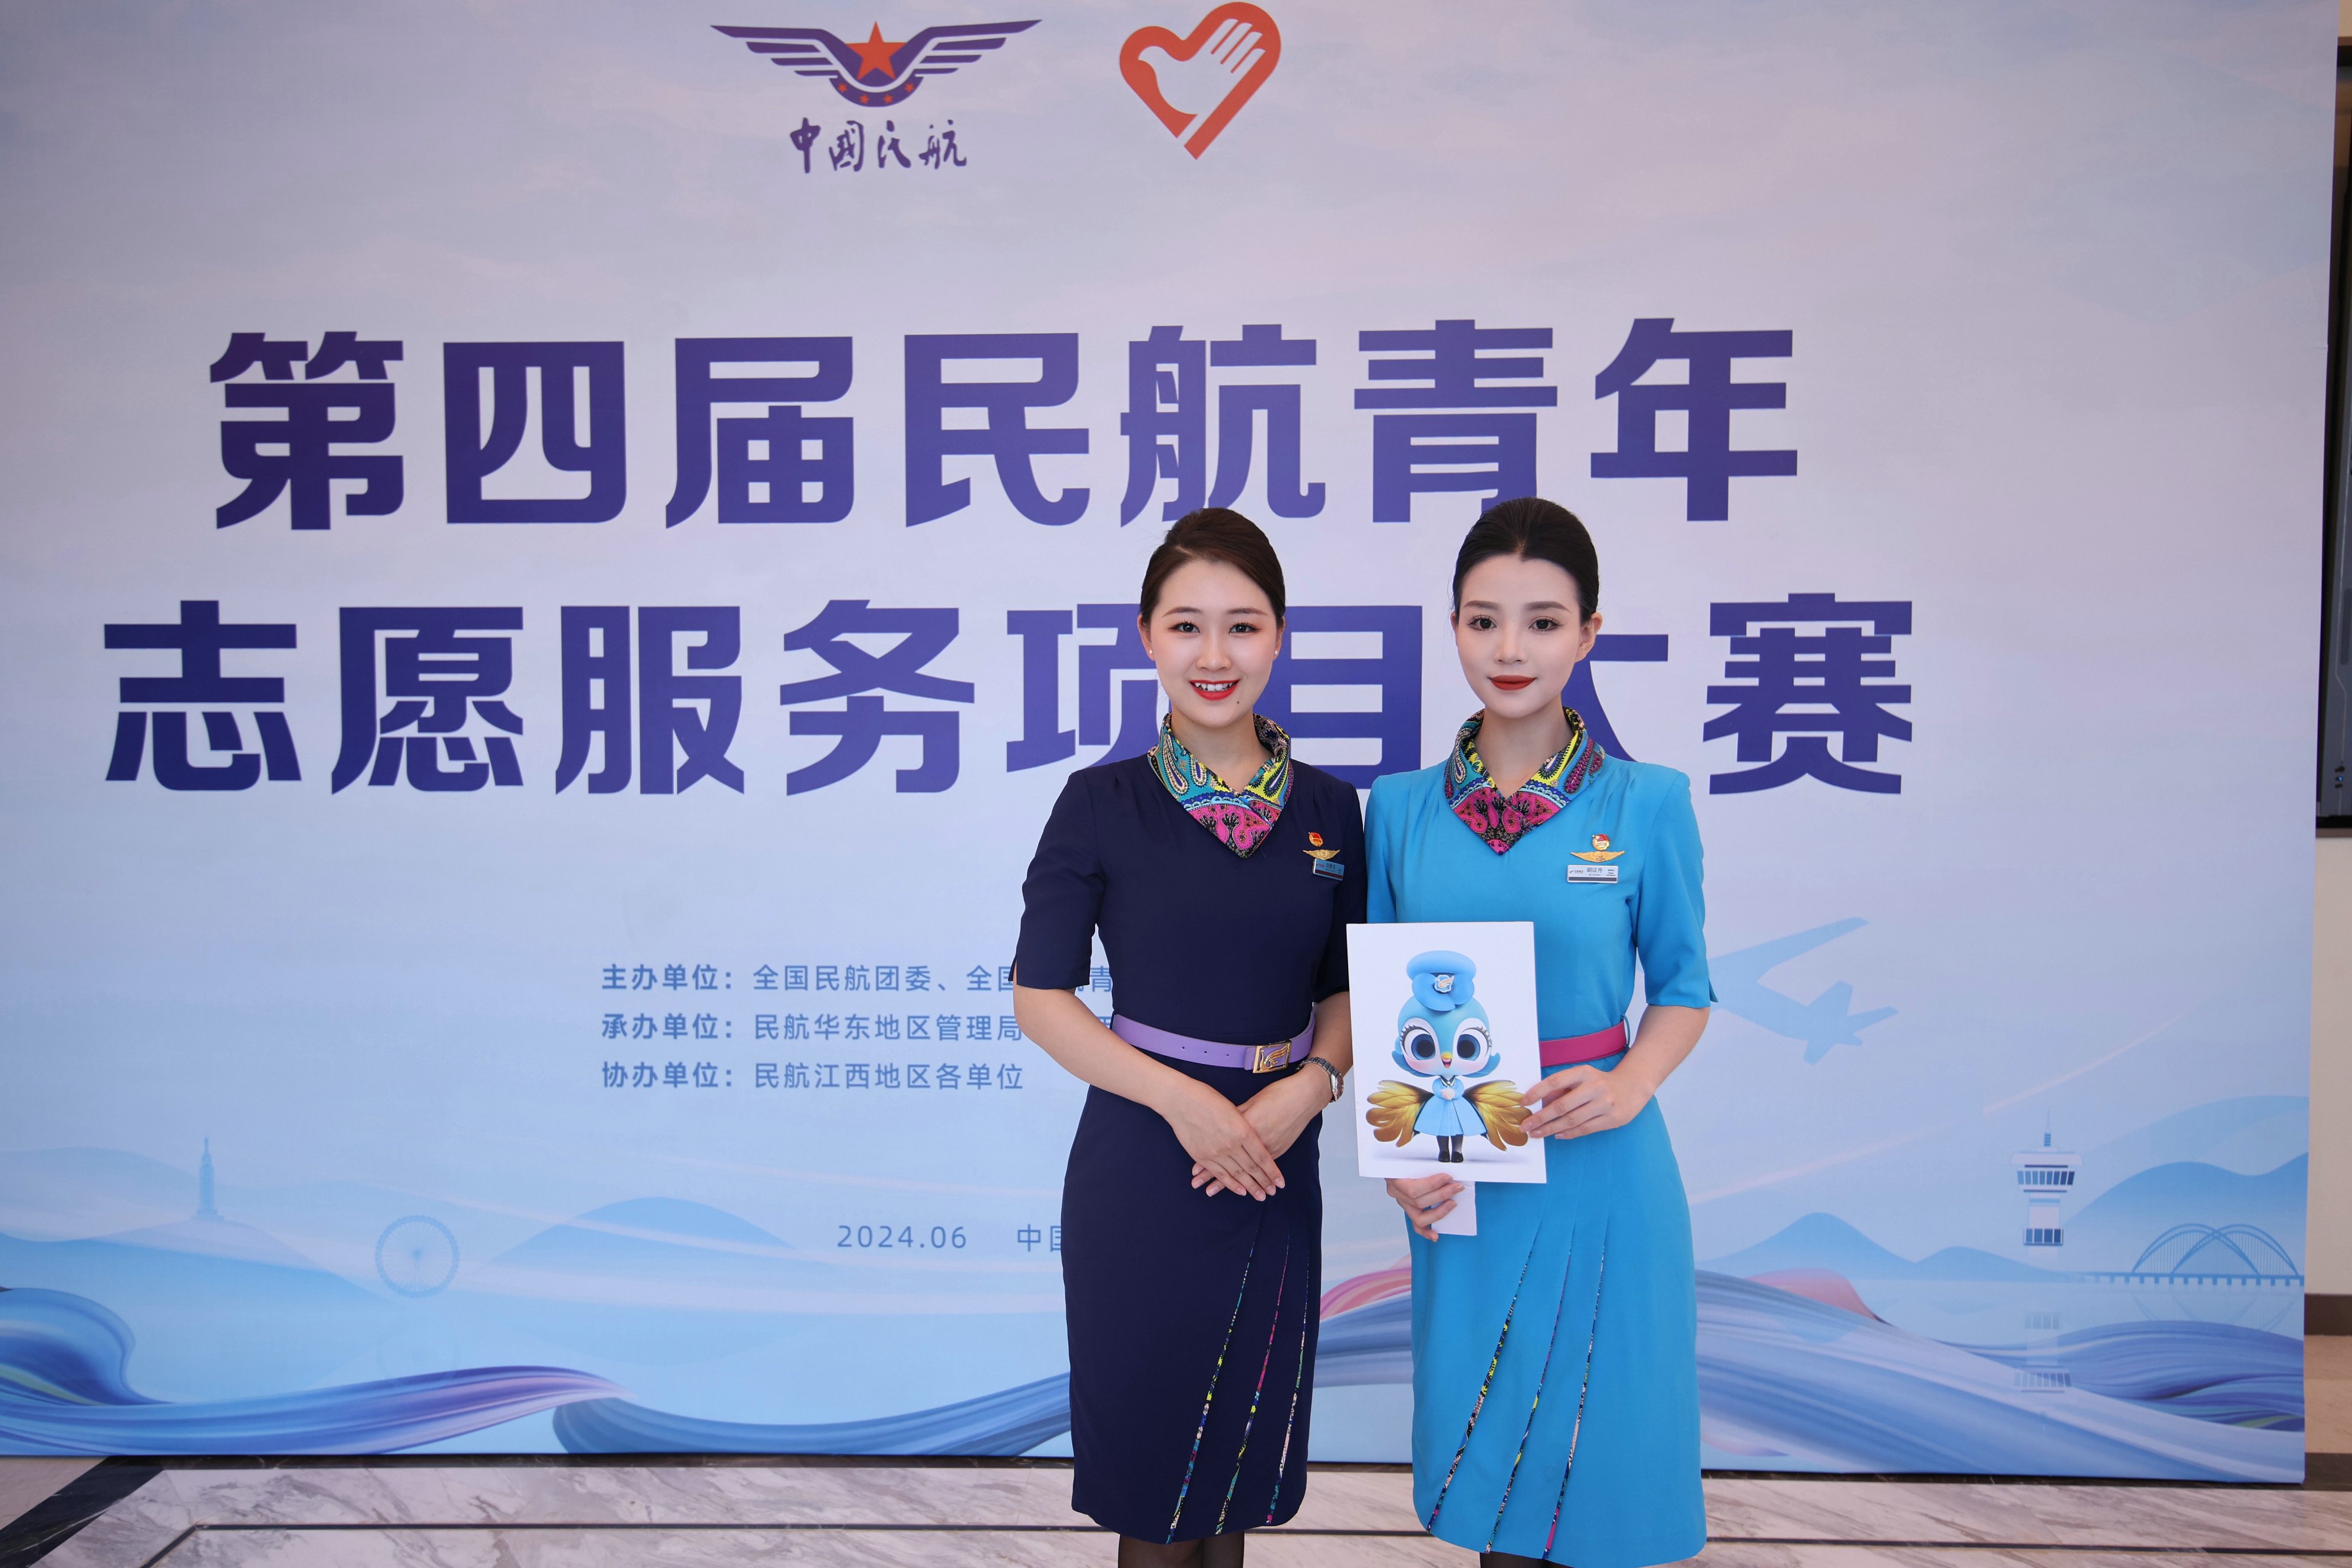 昆明航空在第四届民航青年志愿服务项目大赛斩获银奖